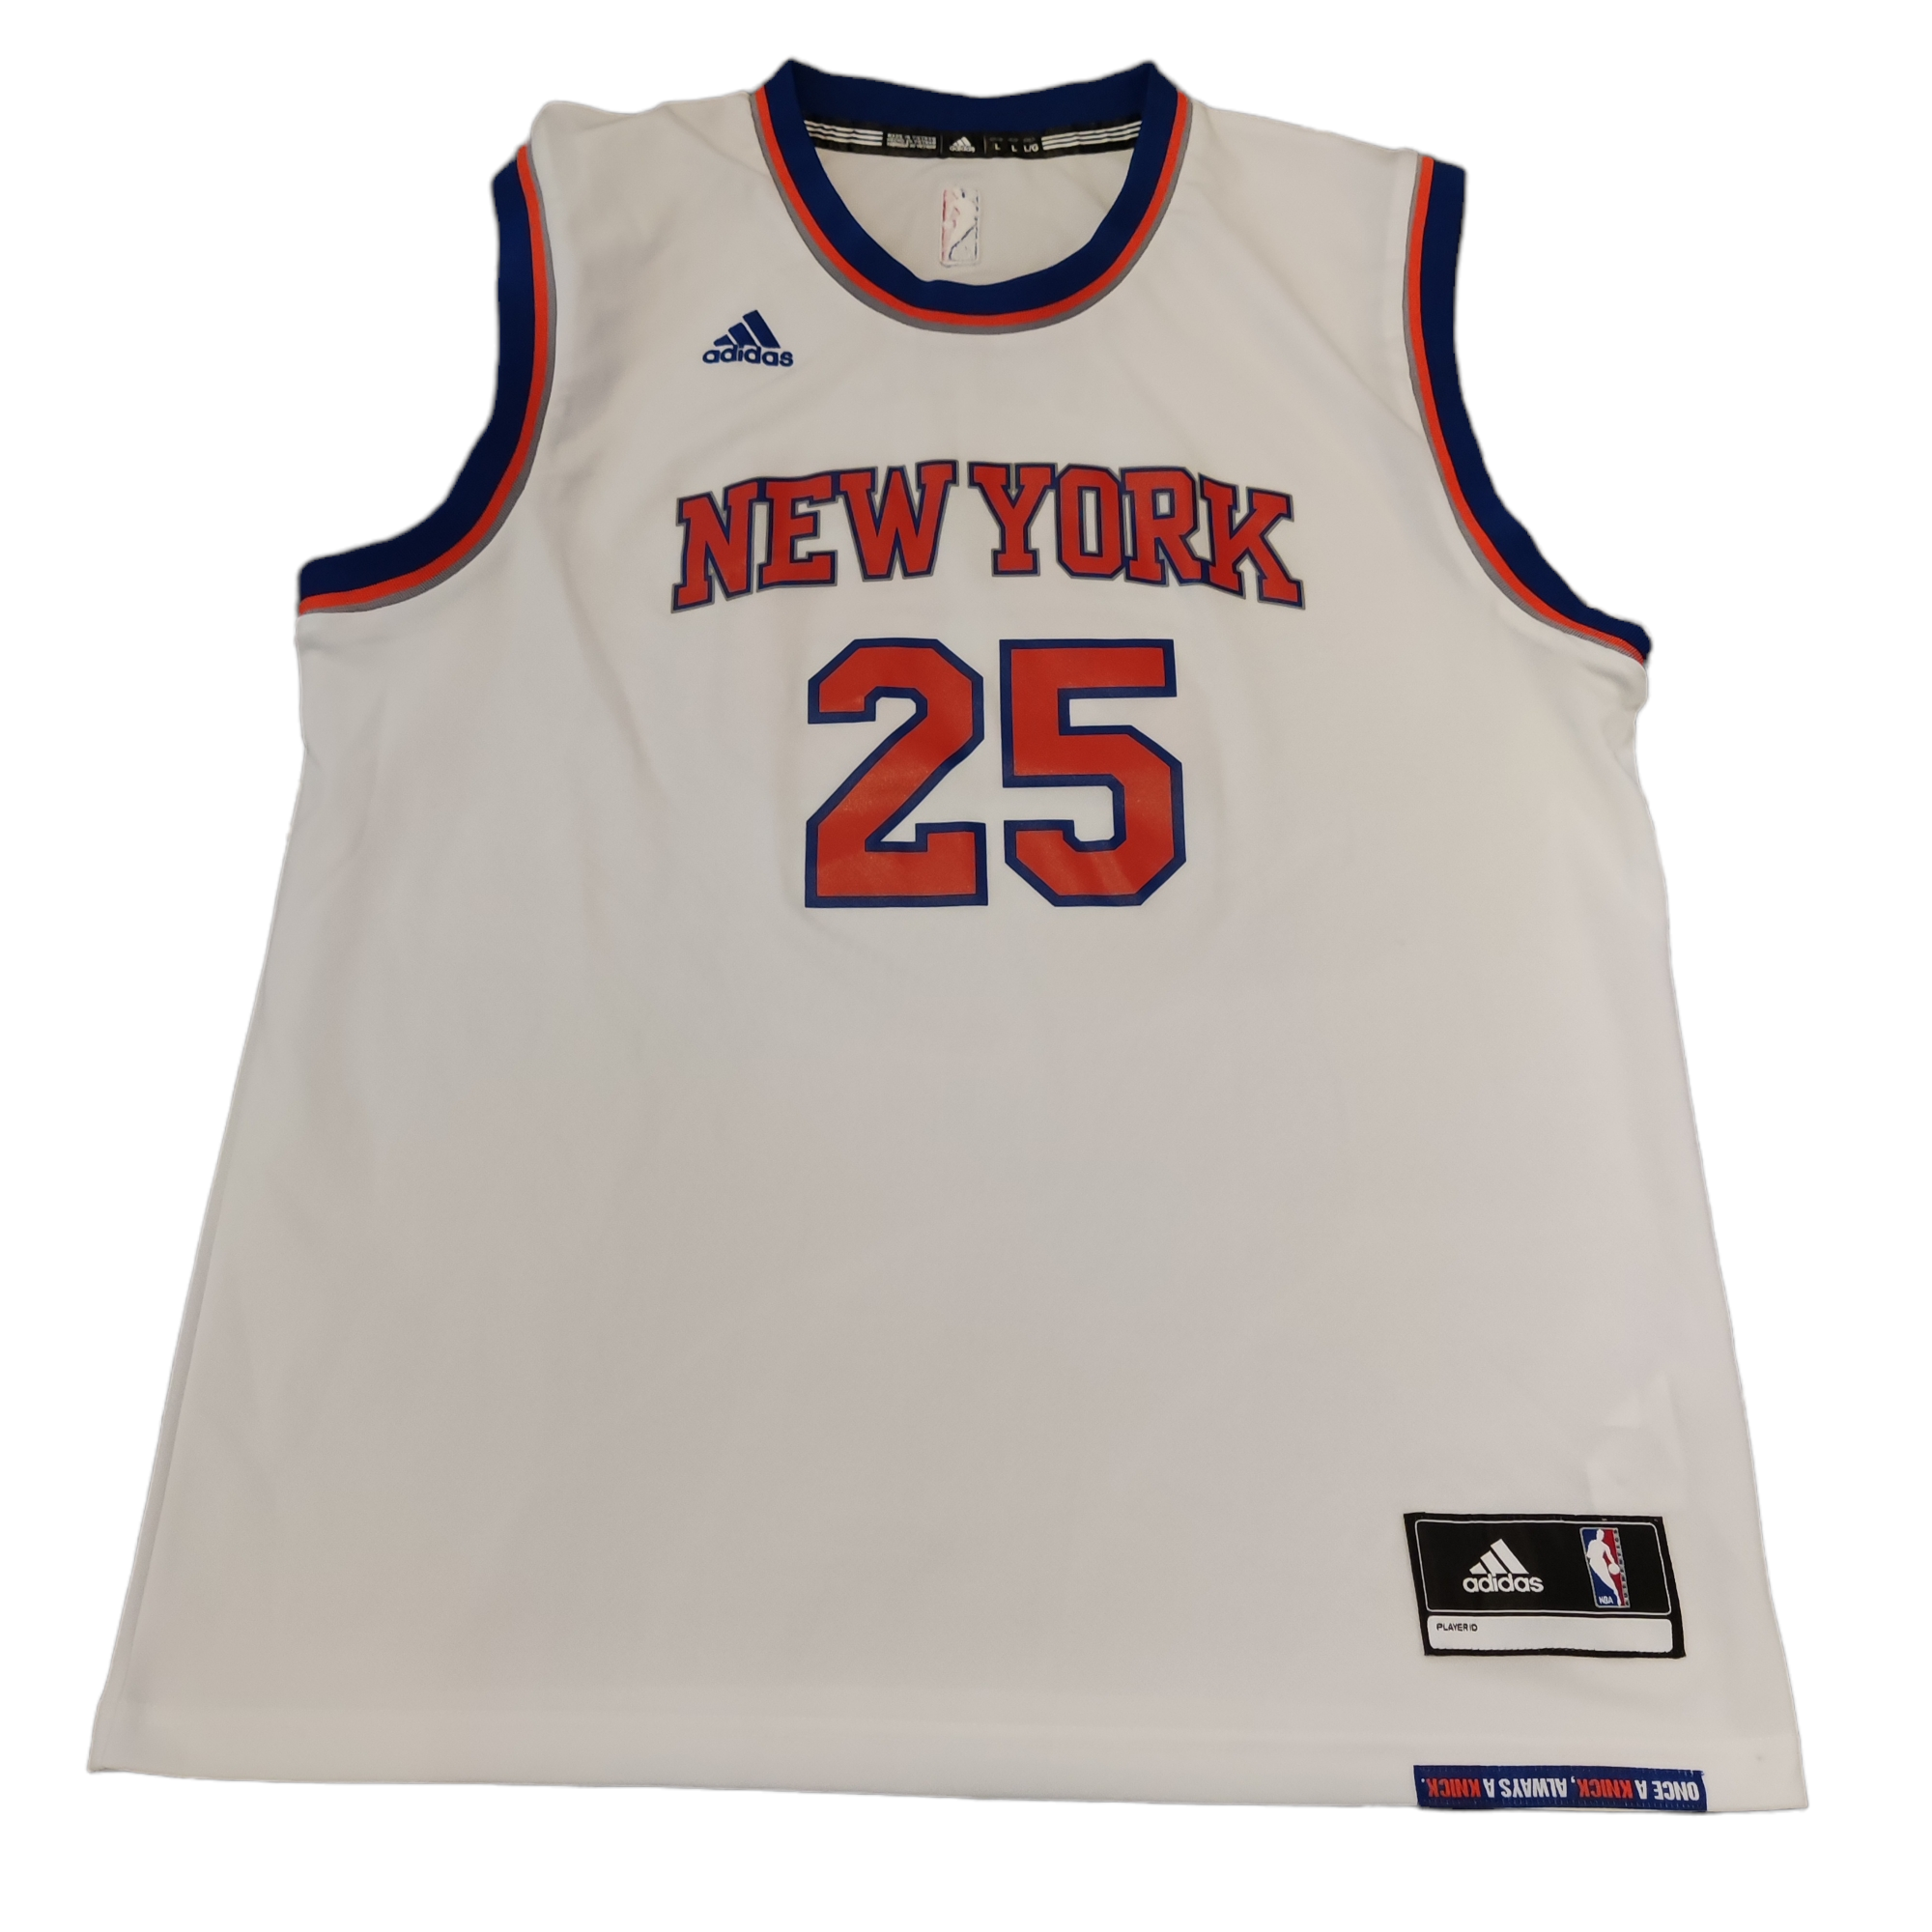 NBA NEW YORK KNICKS BASKETBALL SHIRT JERSEY ADIDAS DERRICK ROSE #25